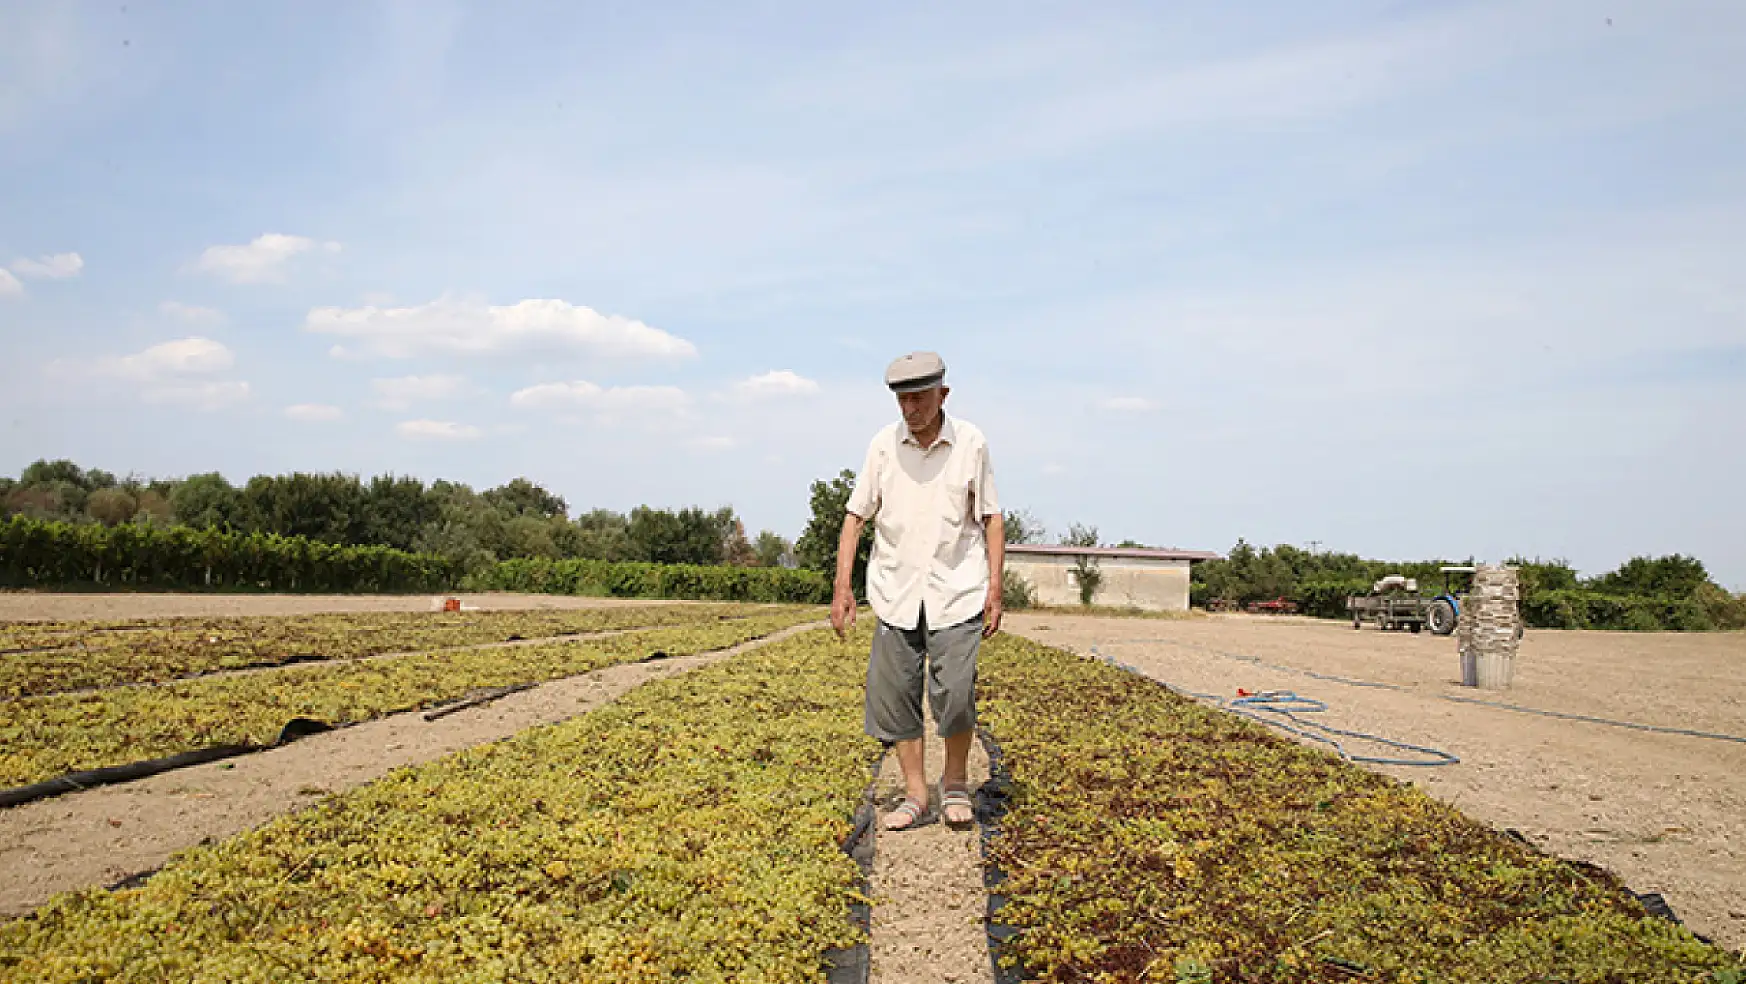 91 yaşında topraktan kopamayan çiftçi: Toprak emeğe saygısızlık yapmaz, hakkını verir